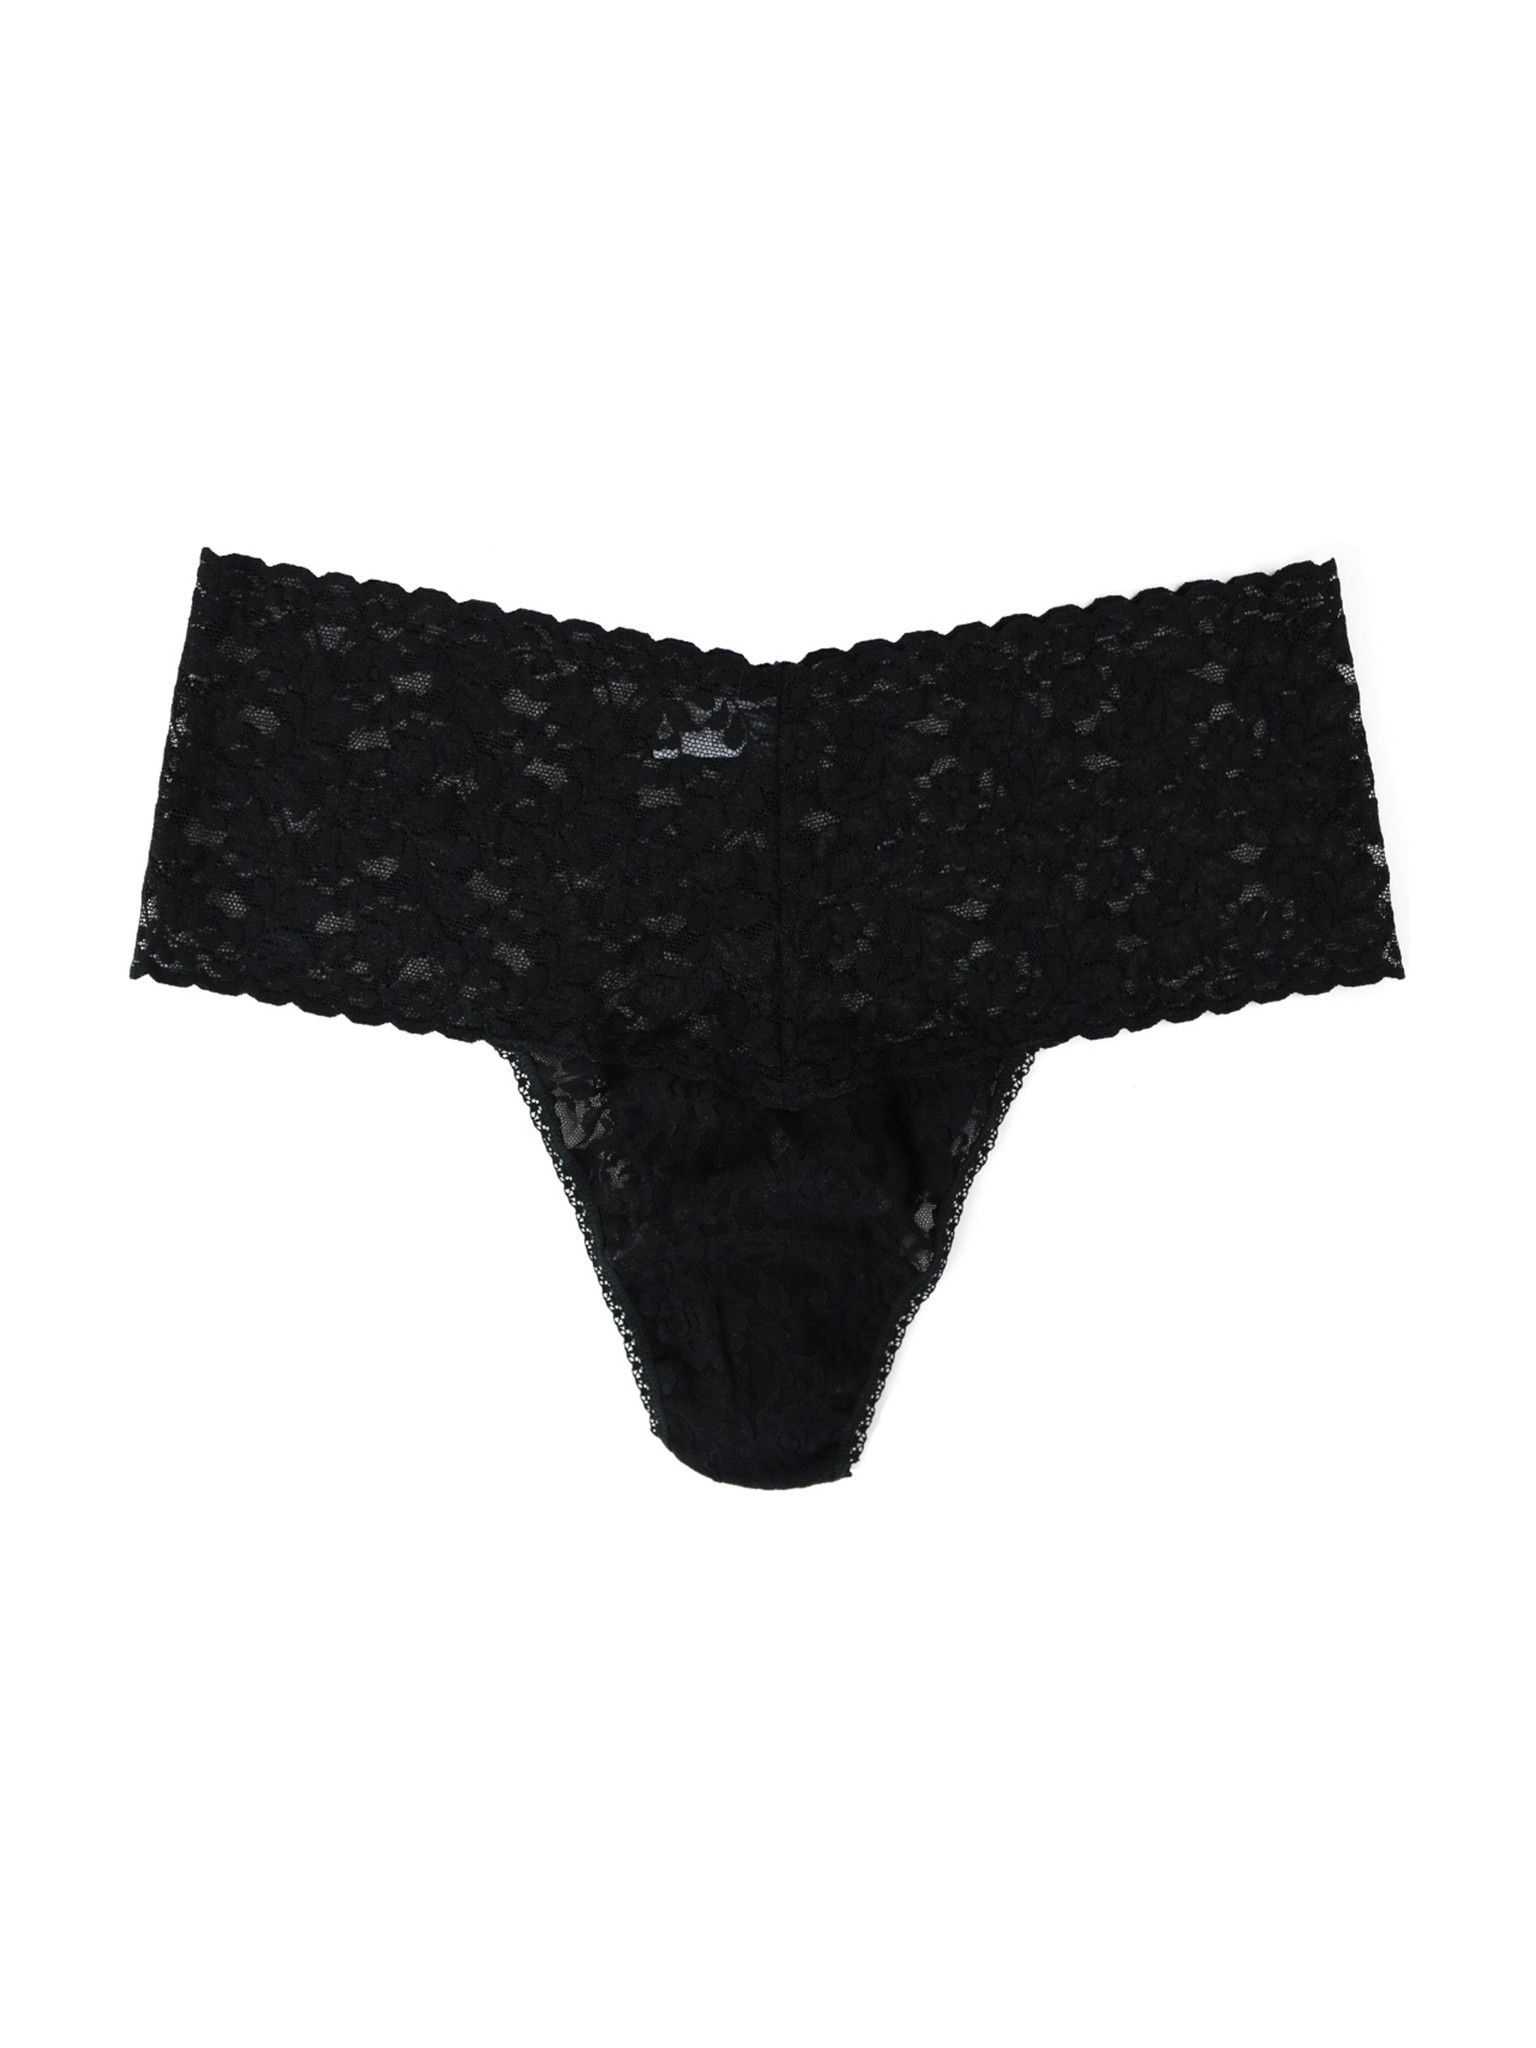 Retro Thong Plus Panty Black 9K1926X - Lace & Day